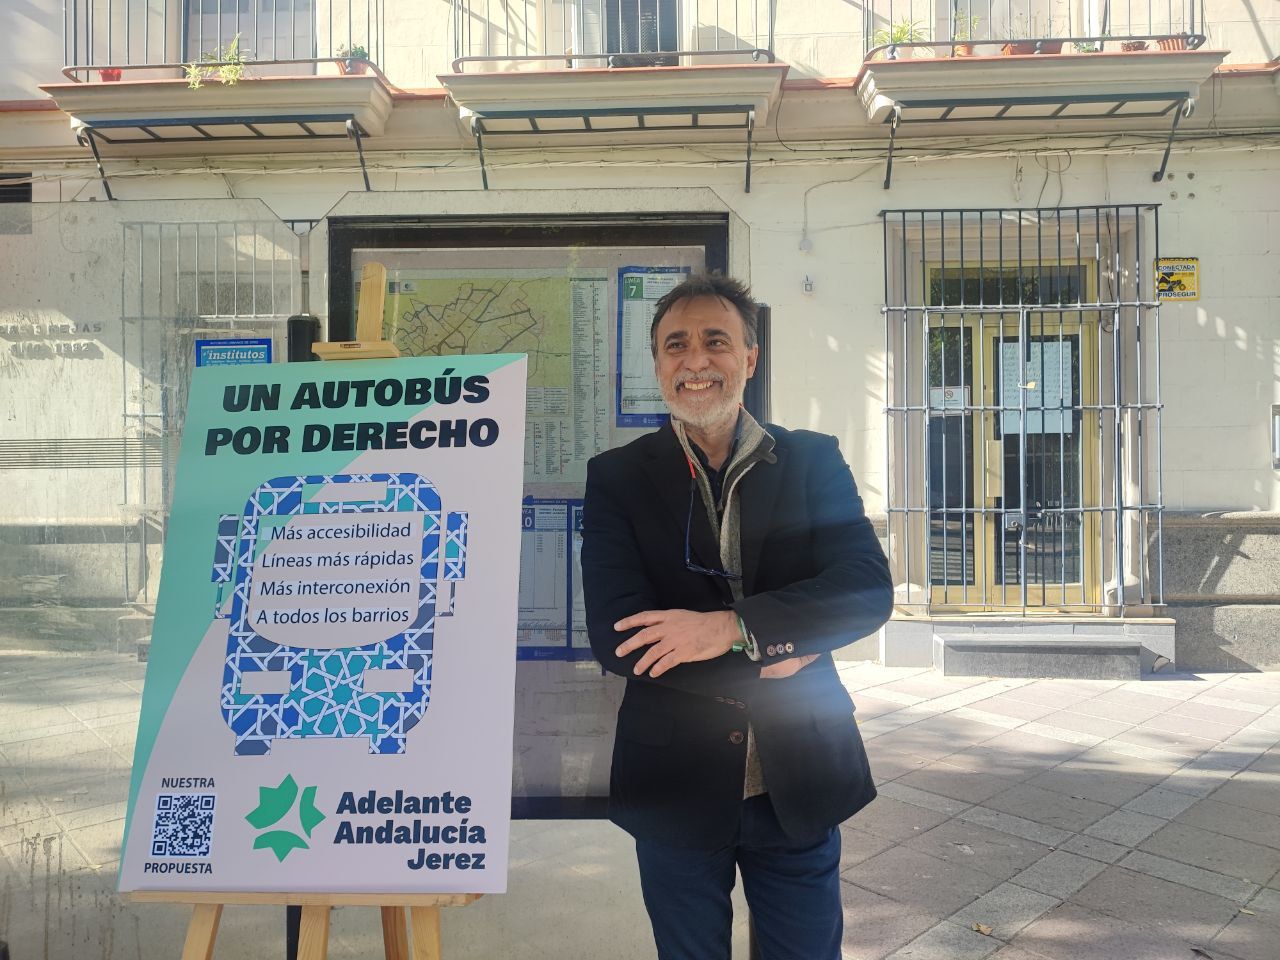 Adelante Andalucía propone autobuses cada 5 minutos en todos los barrios de Jerez. En la imagen, el candidato, Carlos Fernández, junto a un cartel que expone la campaña. 